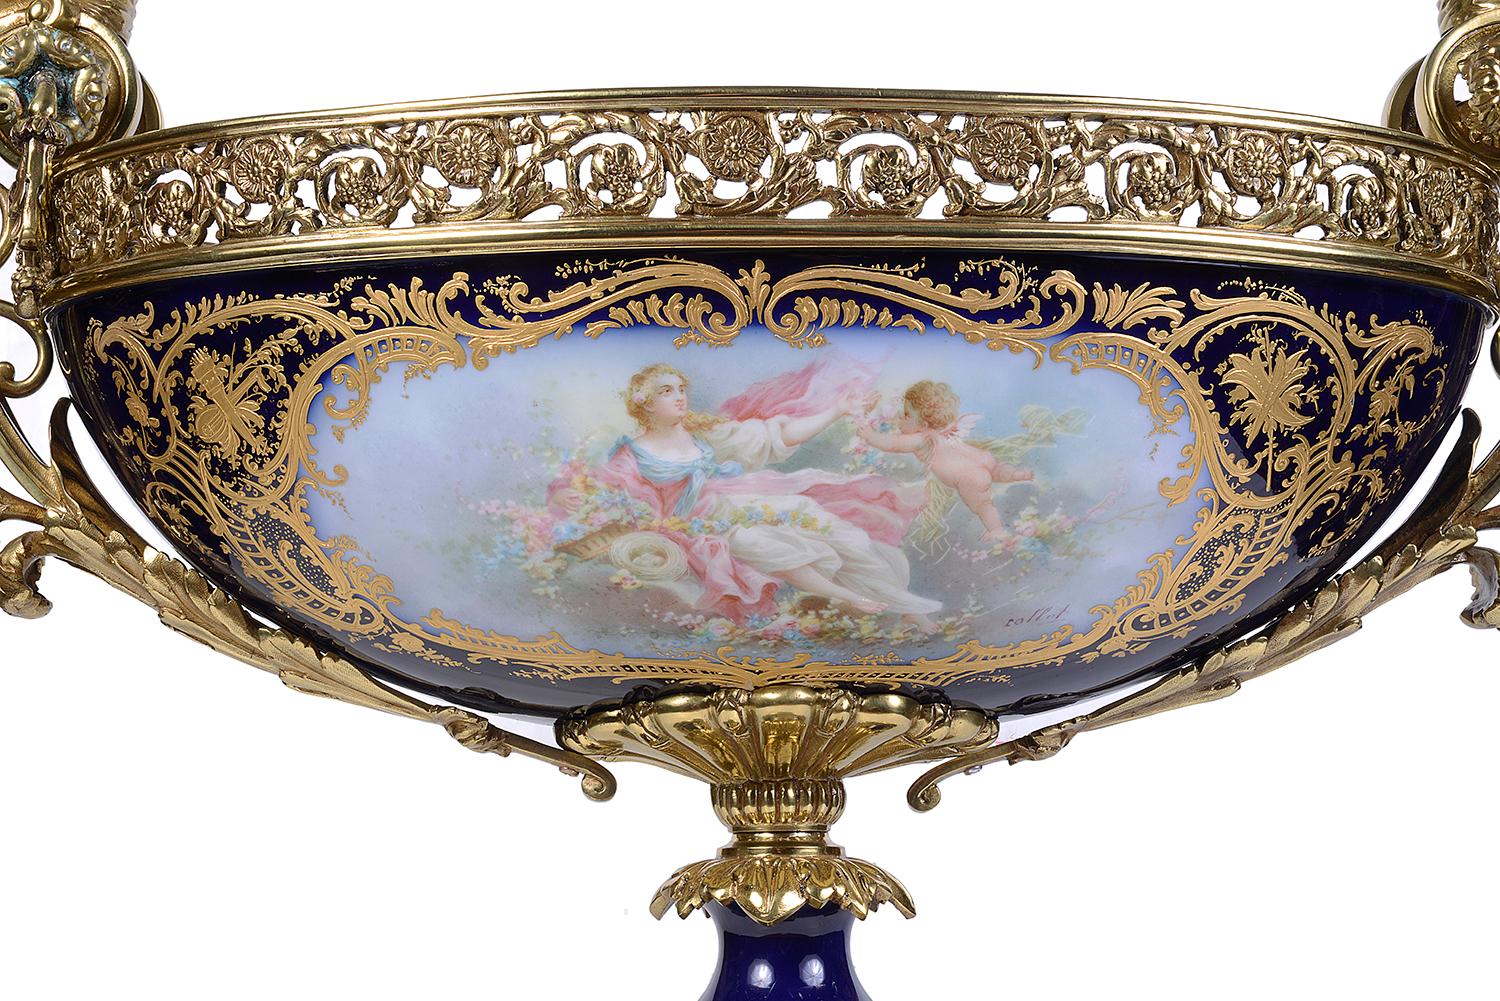 Eine gute Qualität des späten 19. Jahrhunderts Französisch Sevres-Stil Porzellan comport, mit vergoldeten Ormolu klassischen weiblichen montiert Griffe auf beiden Seiten, über einem durchbrochenen Kragen, einem kobaltblauen Boden mit vergoldeten